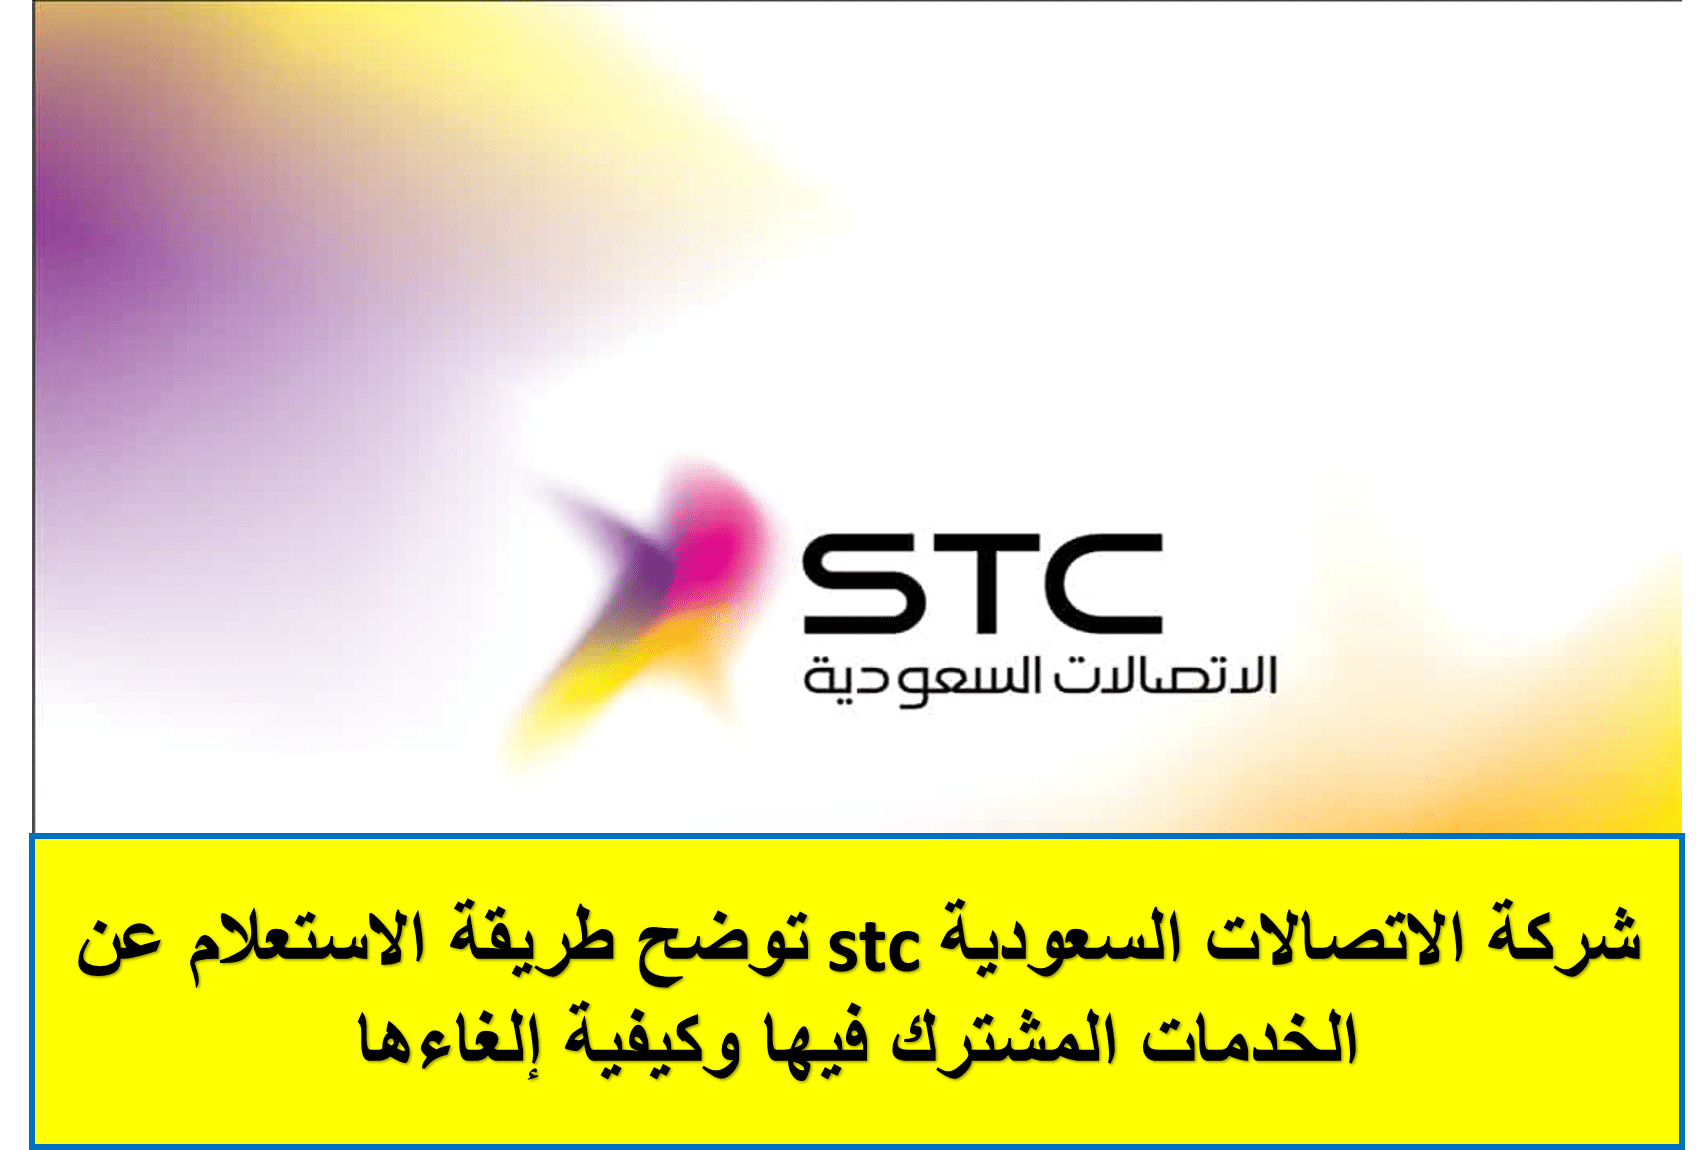 شركة الاتصالات السعودية stc توضح طريقة الاستعلام عن الخدمات المشترك فيها وكيفية إلغاءها